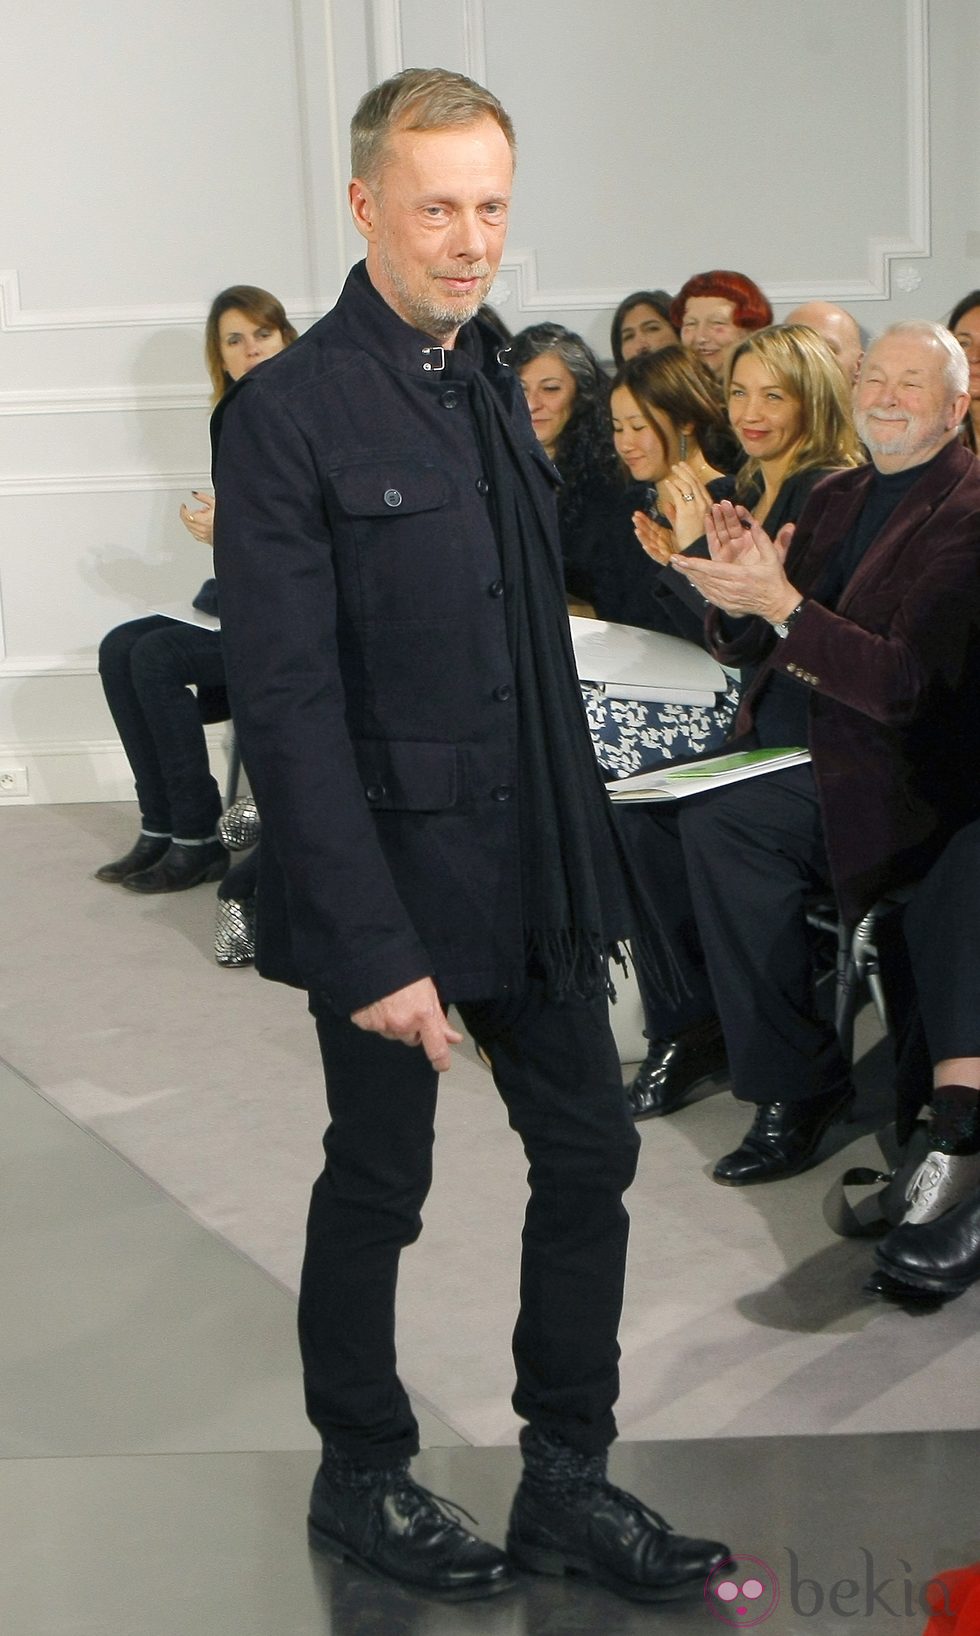 Bill Gaytten diseñador de la colección Alta Costura Primavera/Verano 2012 de Christian Dior